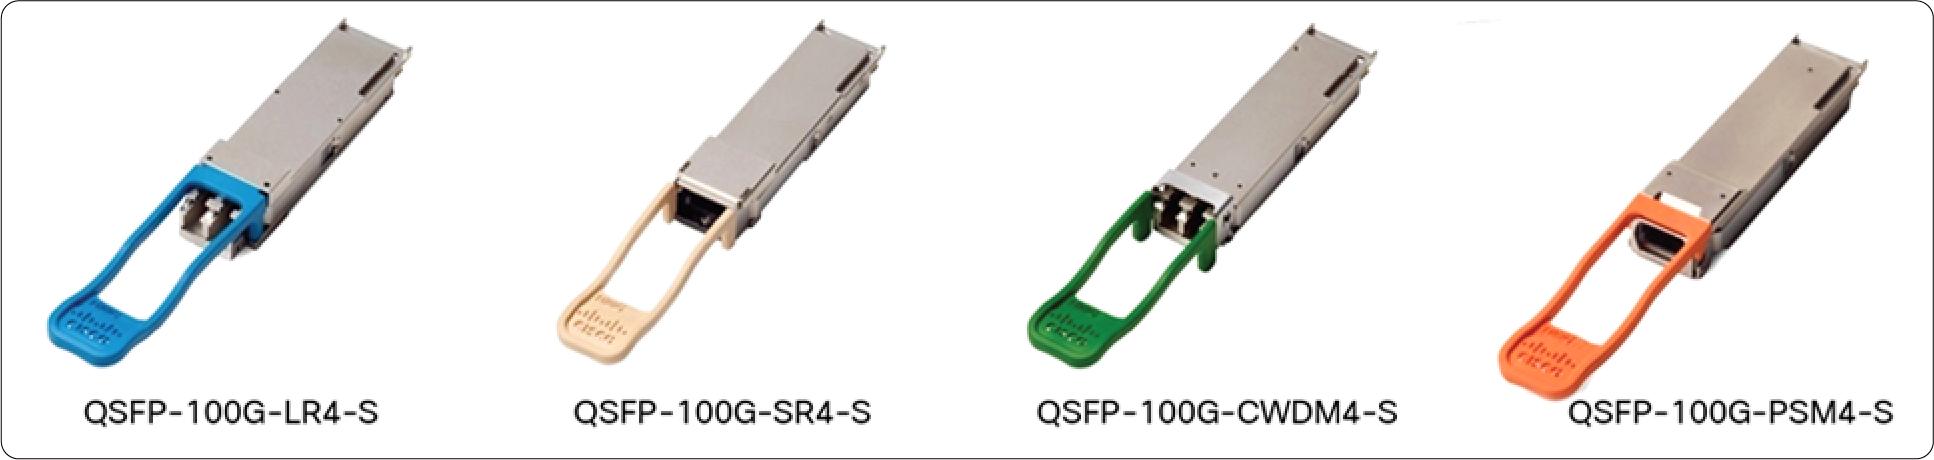 QSFP-100G-AOC1M Cisco 100 Gigabit Modules - Cisco 100GBASE QSFP Modules - 2